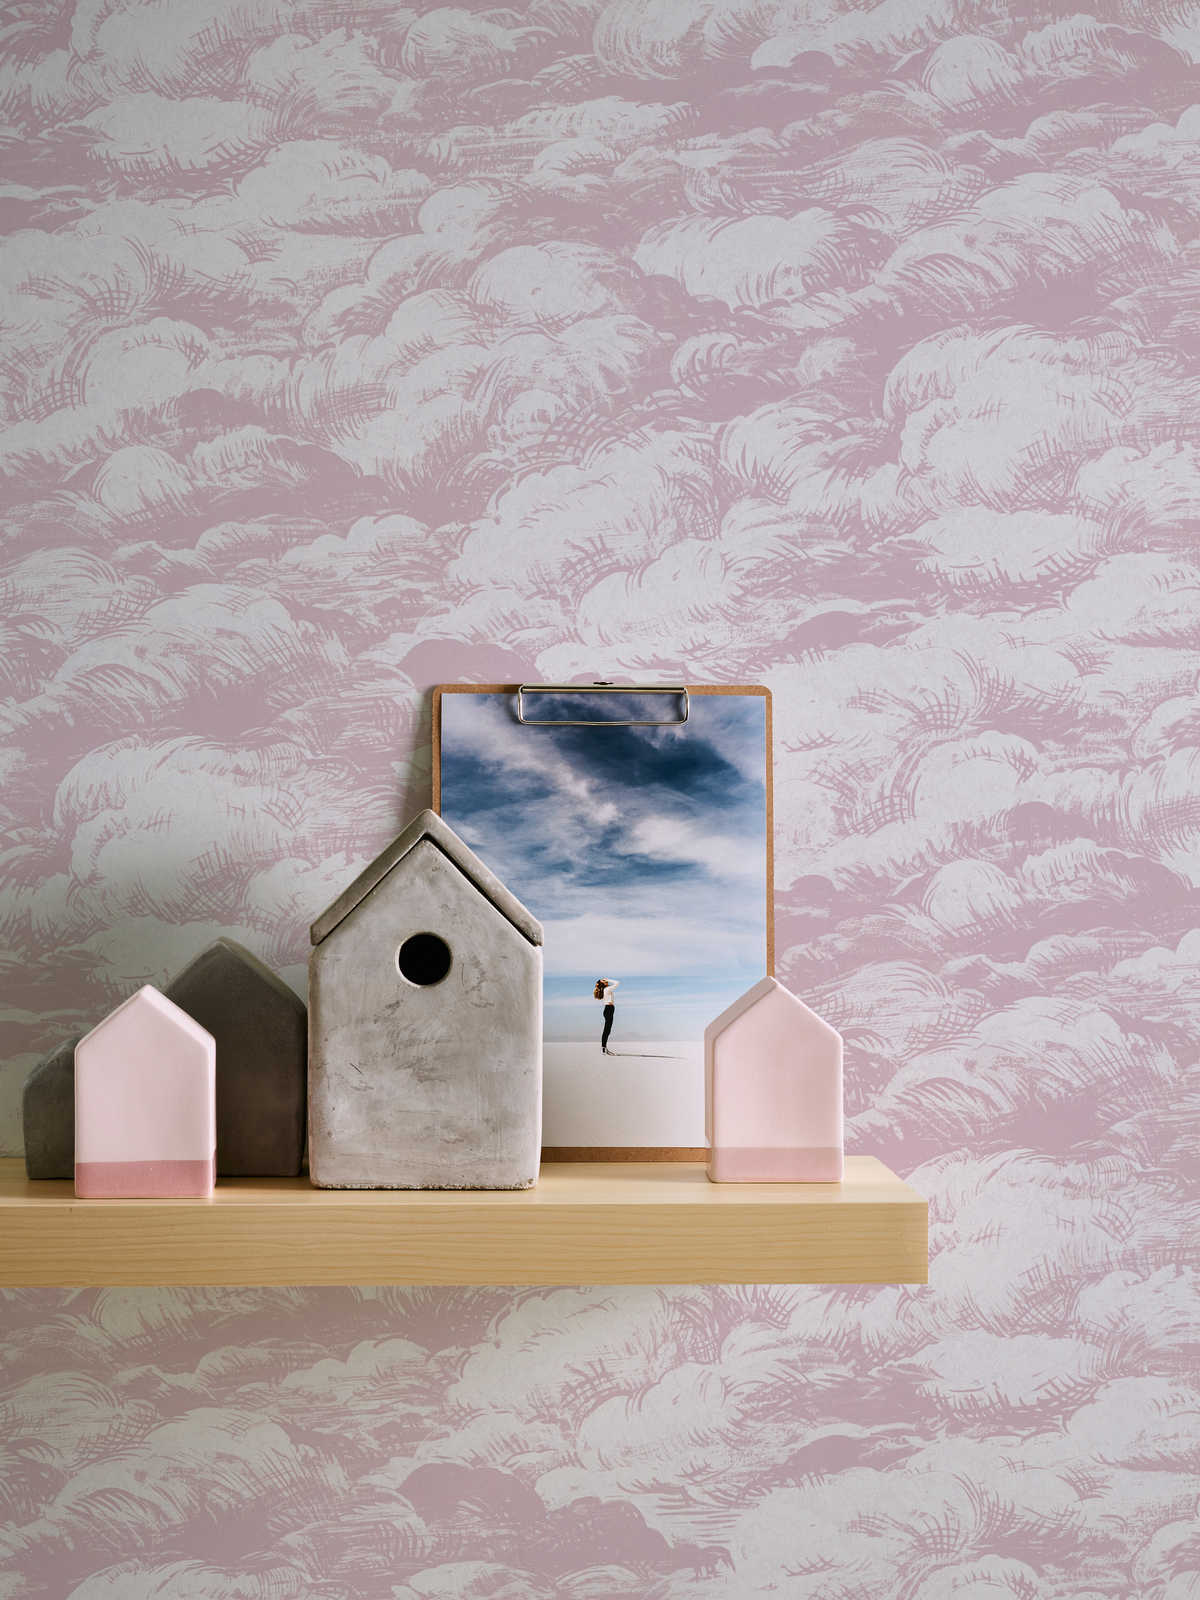             Papier peint vieux rose nuages design paysage vintage - rose, blanc
        